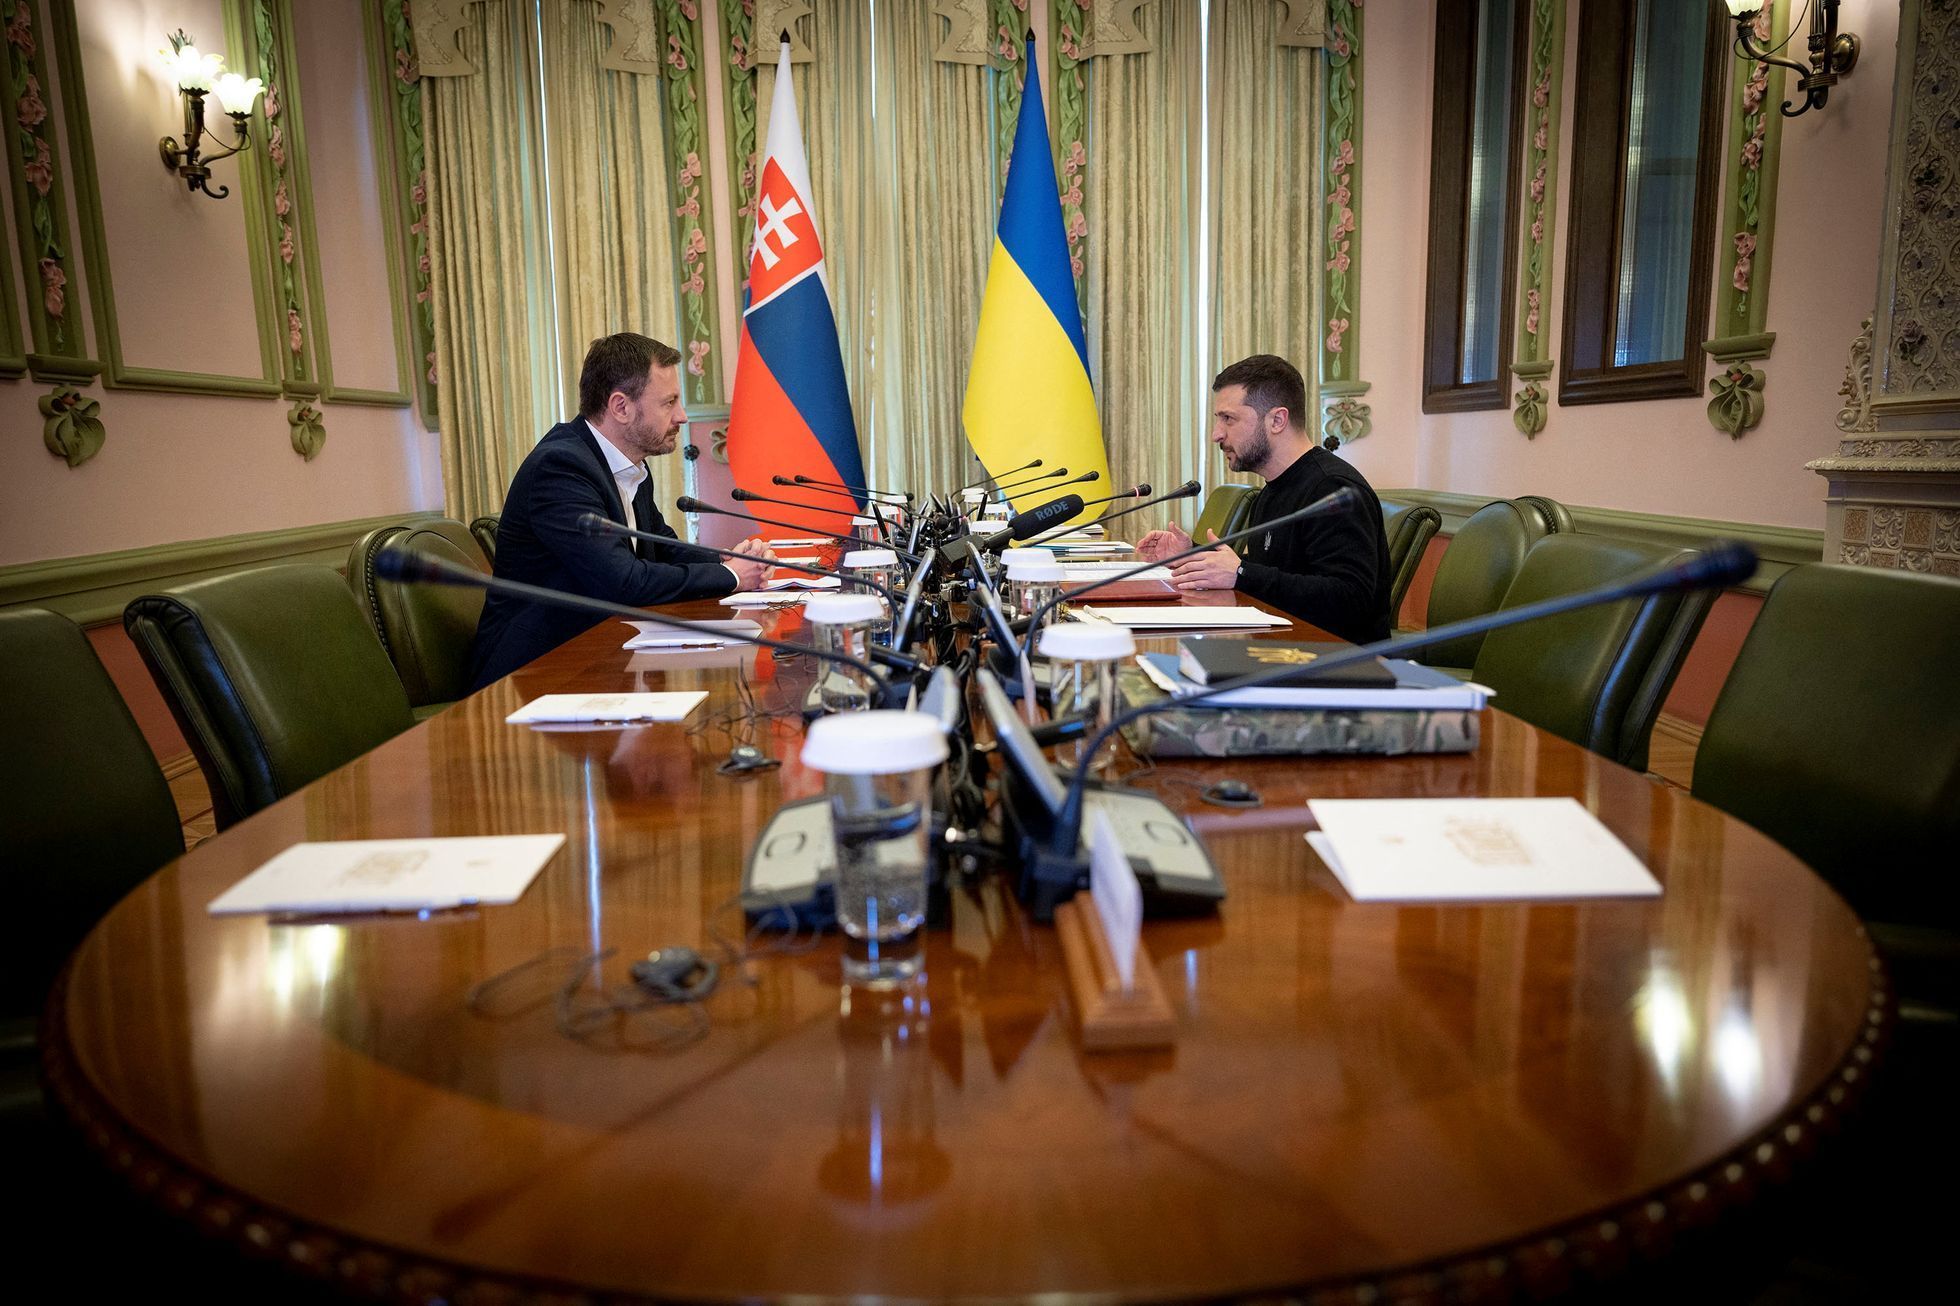 Slovenský premiér Eduard Heger v pátek jednal s Volodymyrem Zelenským v Kyjevě.